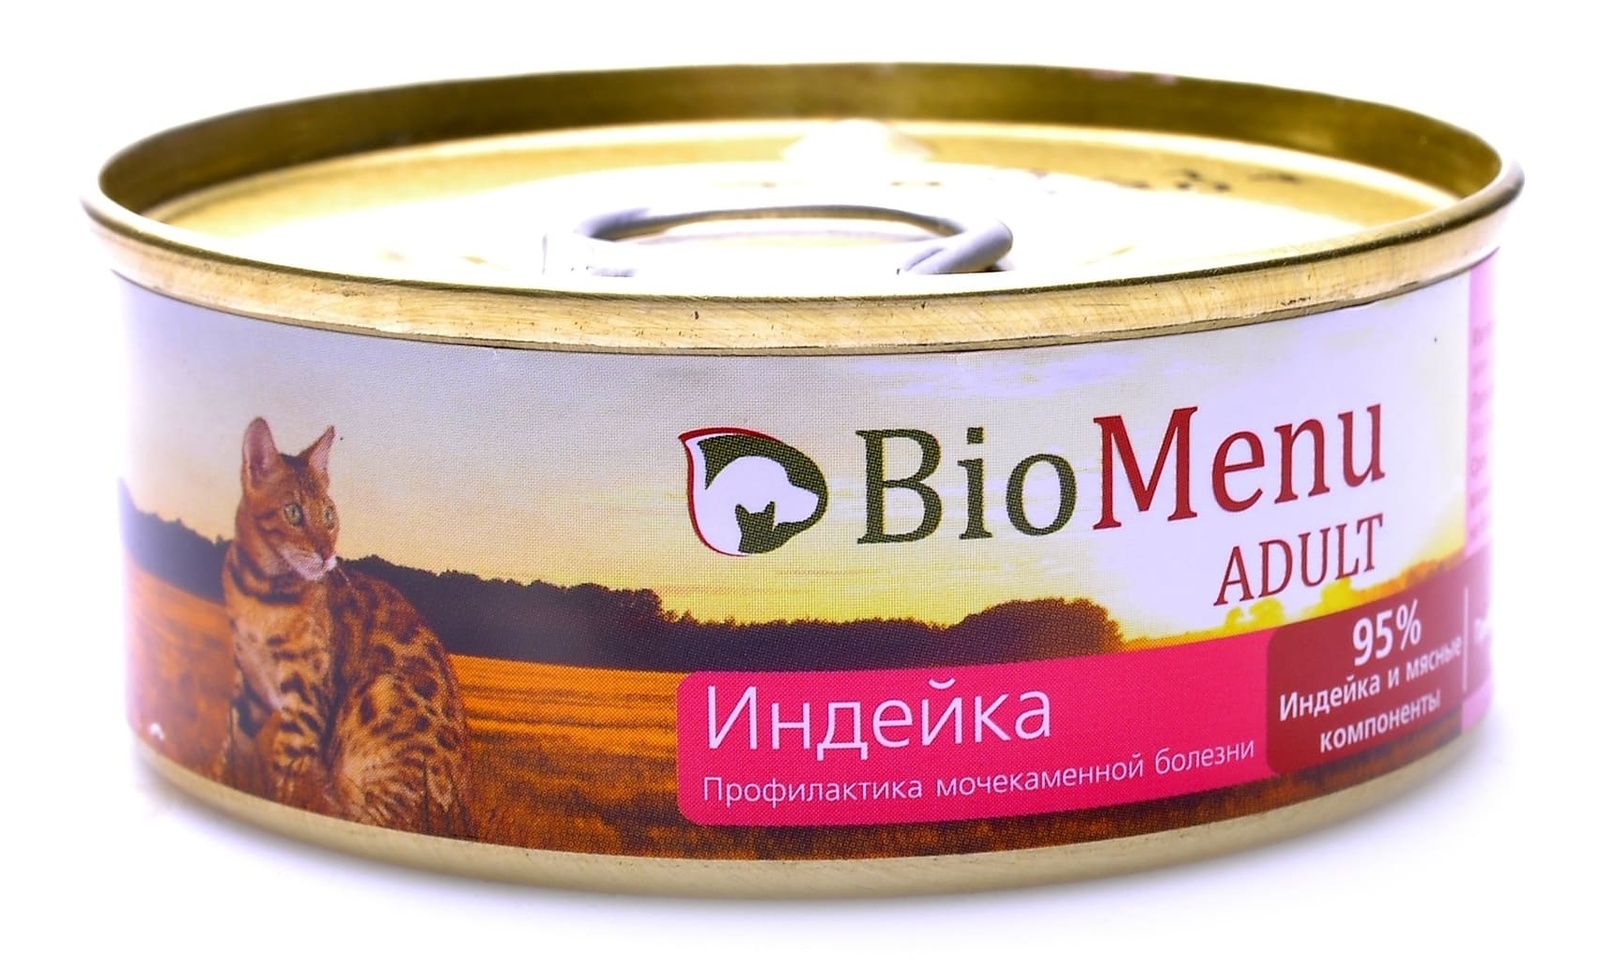 BioMenu BioMenu паштет для кошек с индейкой (100 г) консервы biomenu adult для кошек мясной паштет с индейкой 95% мясо 100 г